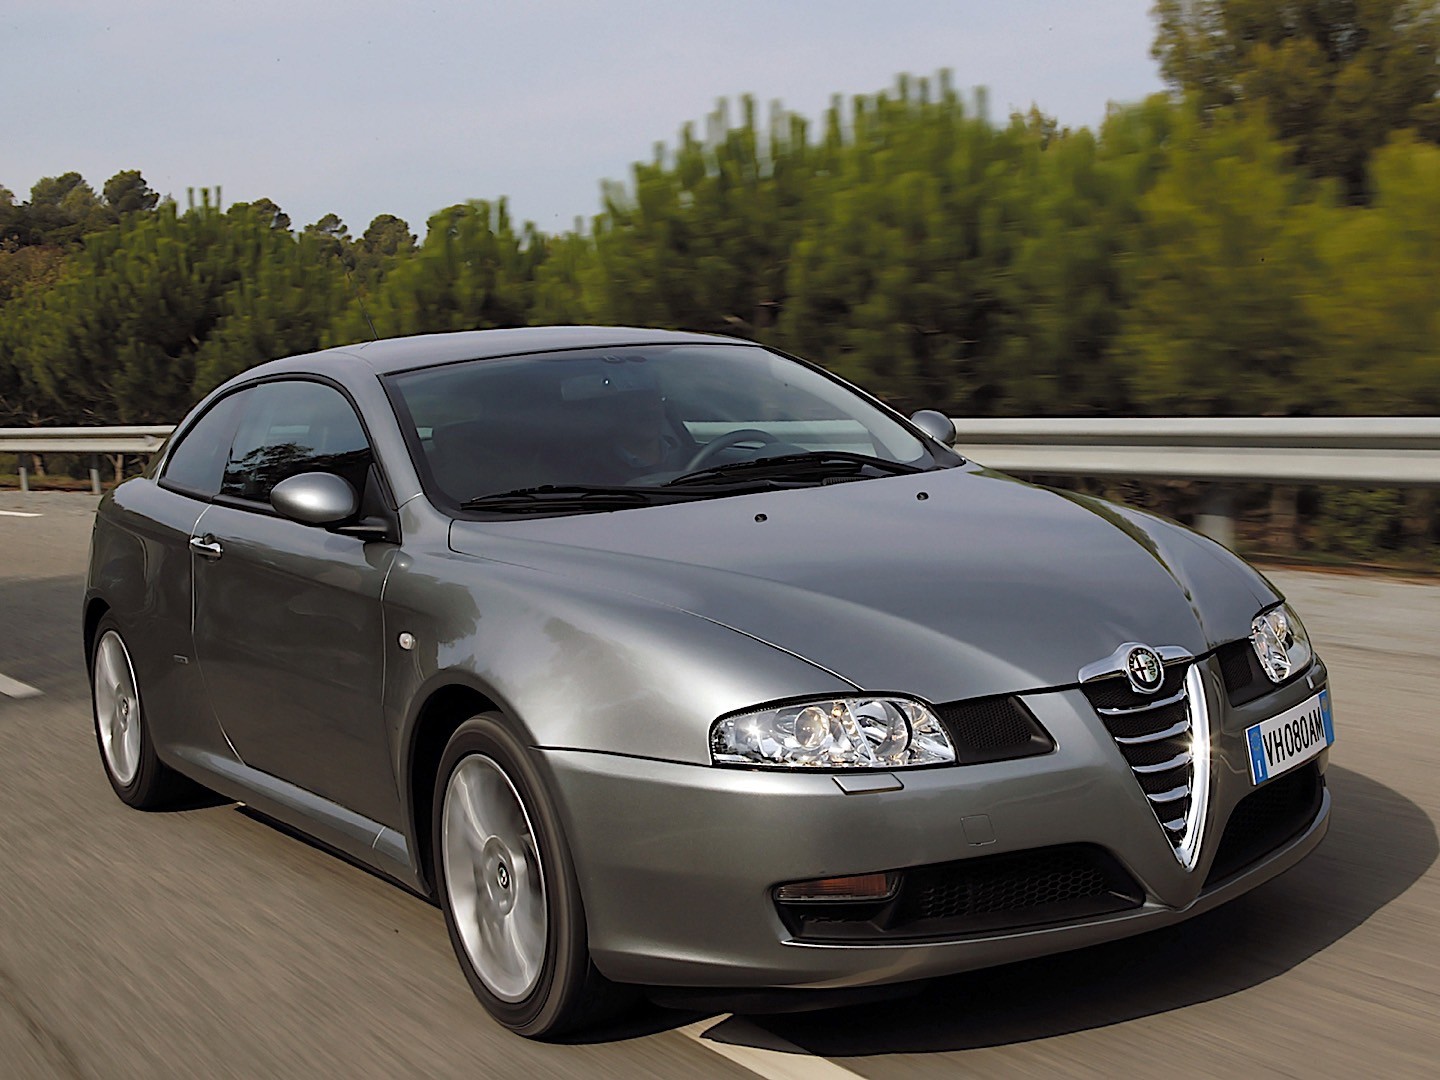 Alfa Romeo GT (2003-2010) - Reliability - Specs - Still Running Strong